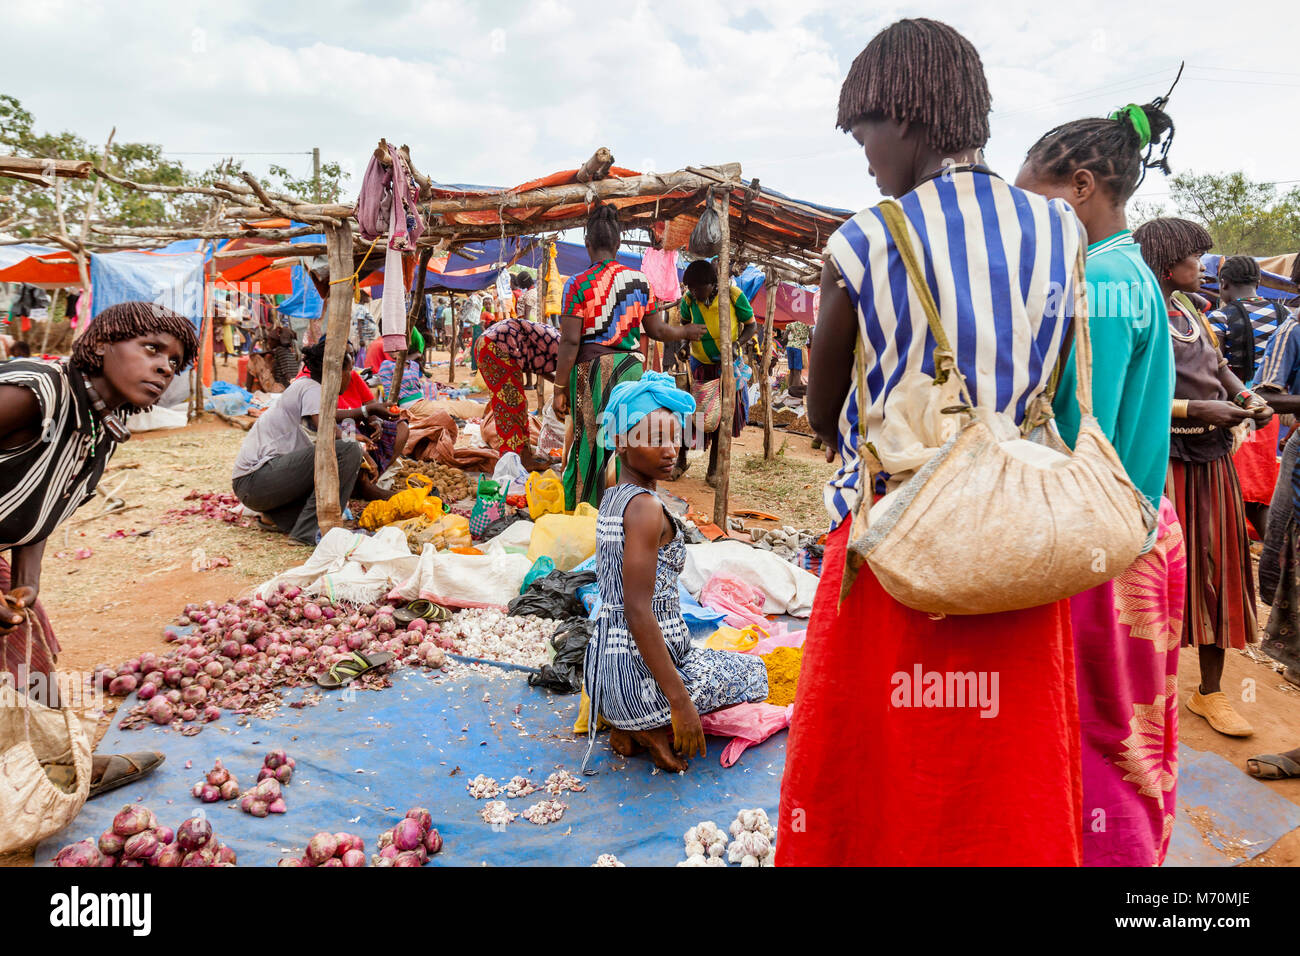 Les populations tribales d'acheter des légumes et épices à l'Alduba Marché Tribal, près de Keyafer, vallée de l'Omo, Ethiopie Banque D'Images